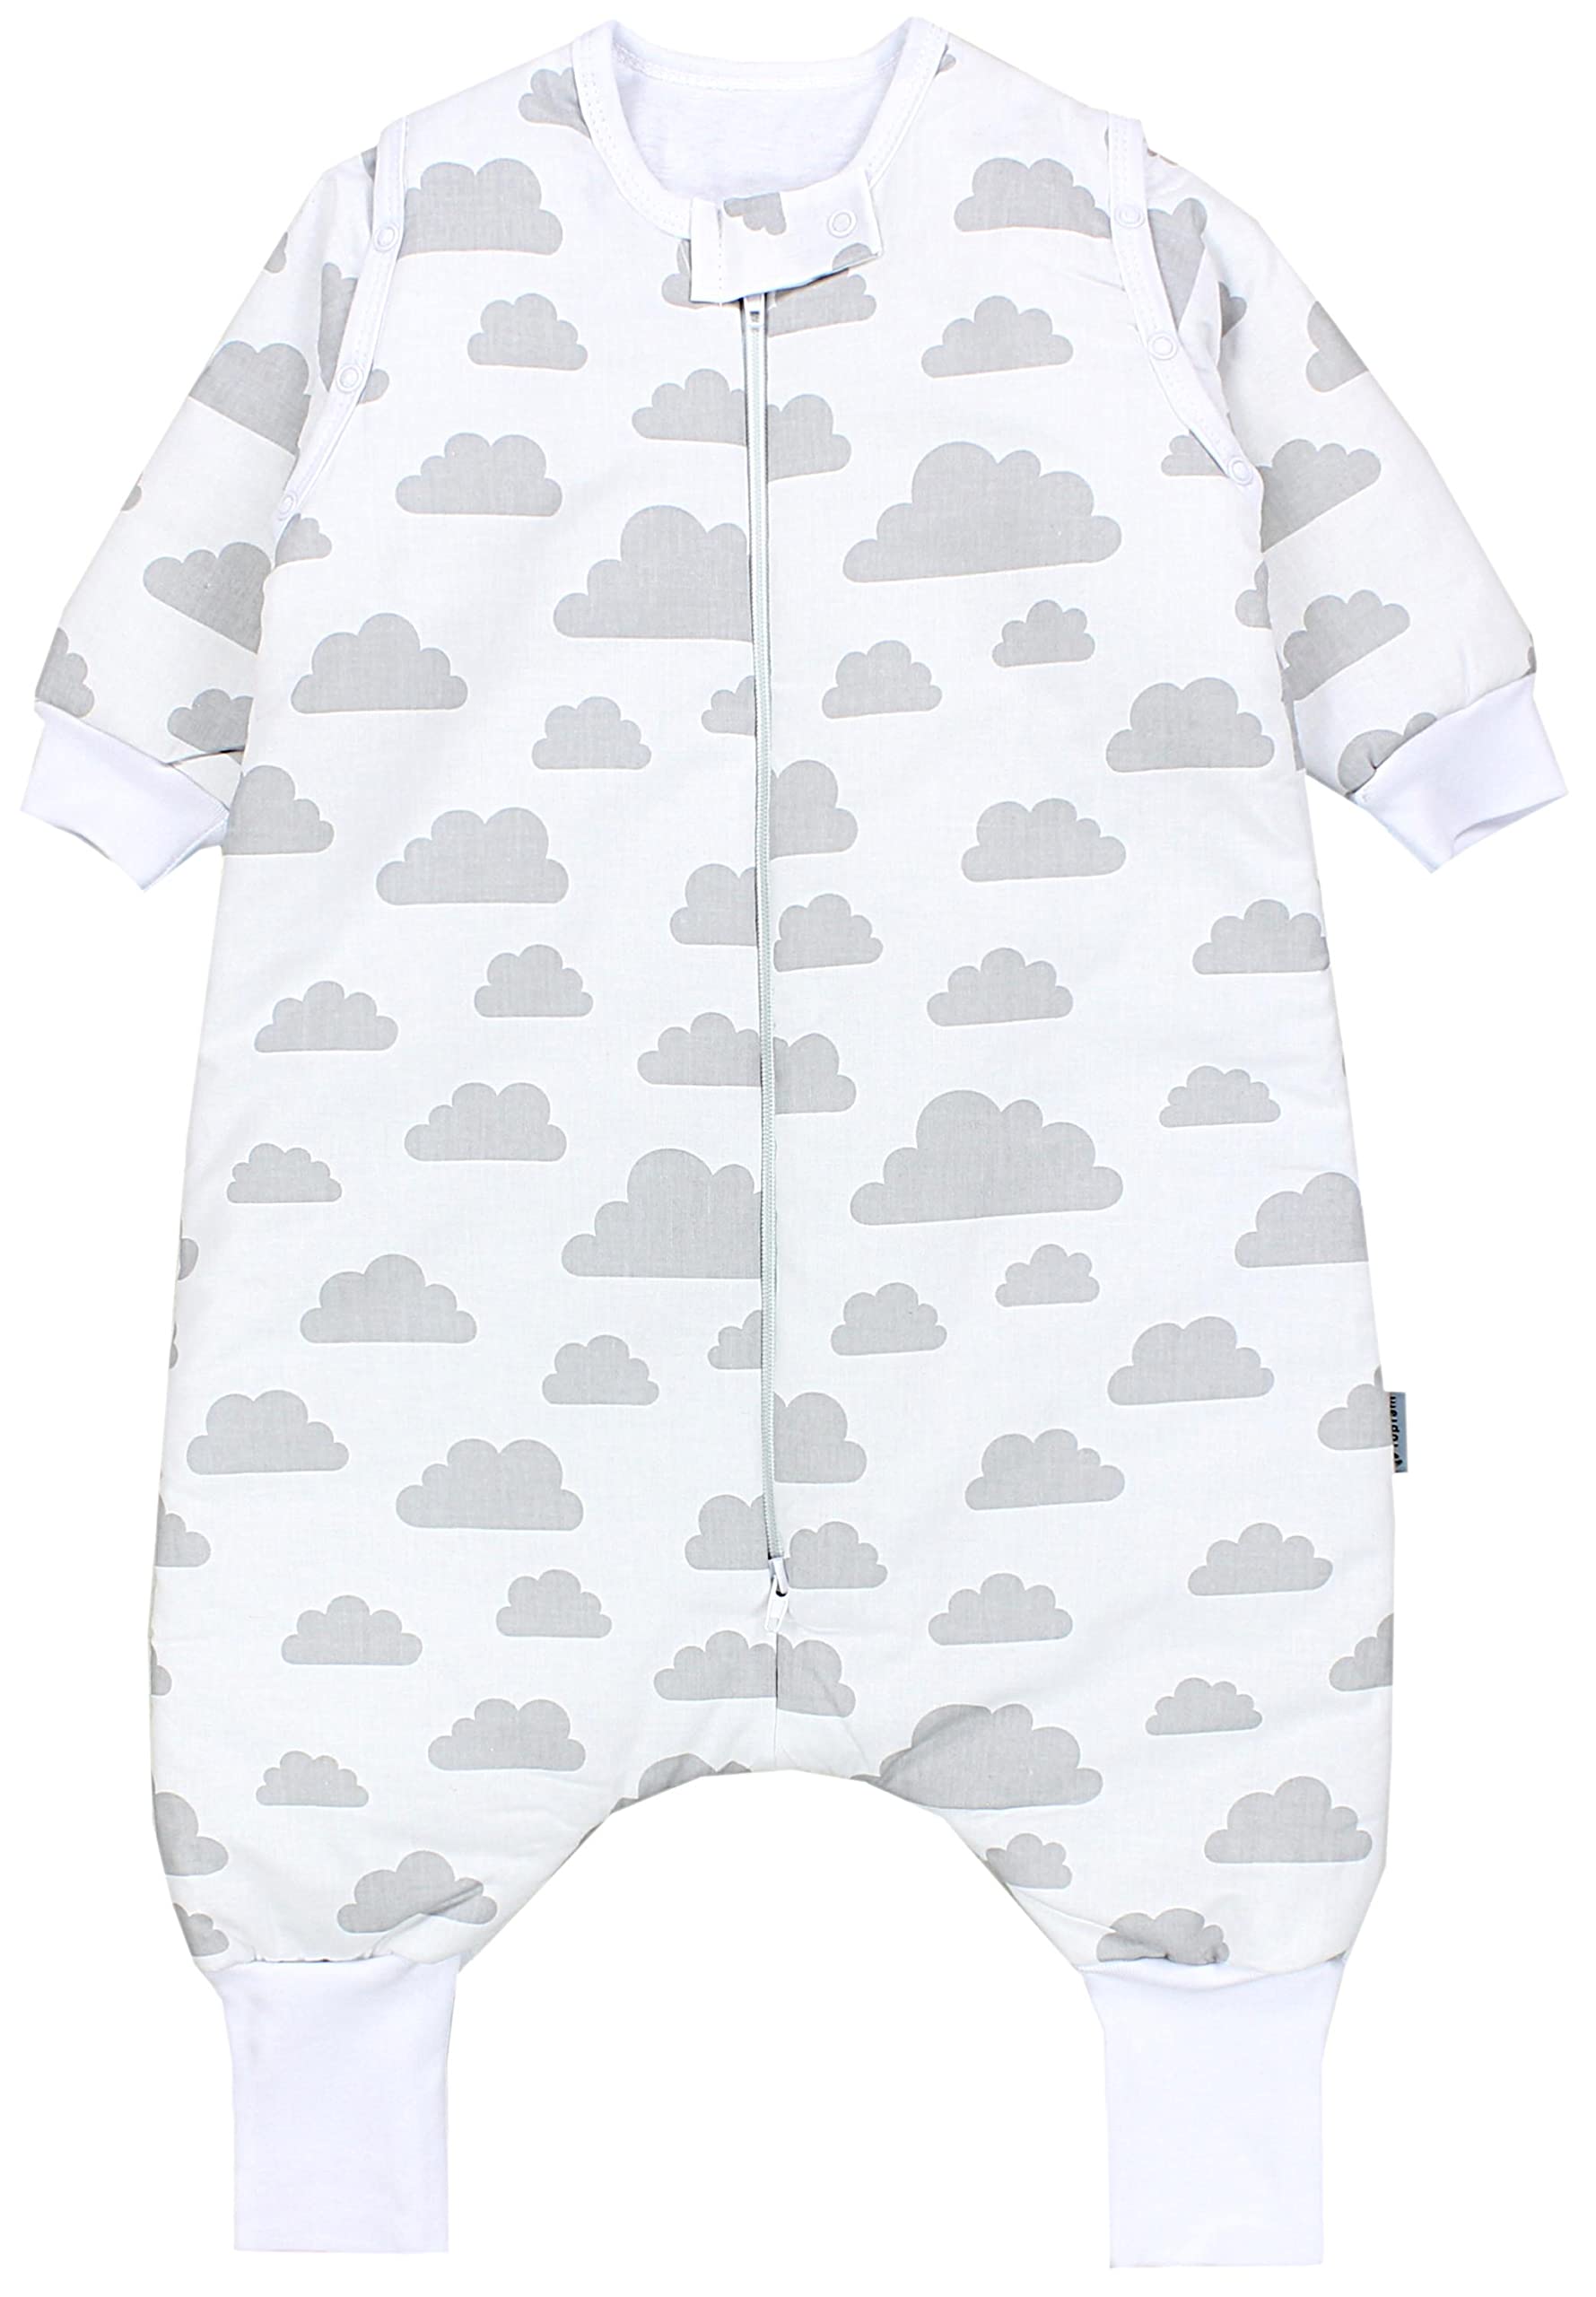 TupTam Baby Schlafsack mit Beinen und Ärmeln OEKO-TEX zertifizierte Materialien, Winterschlafsack 2,5 TOG Unisex, Farbe: Wolken Grau, Größe: 68-74